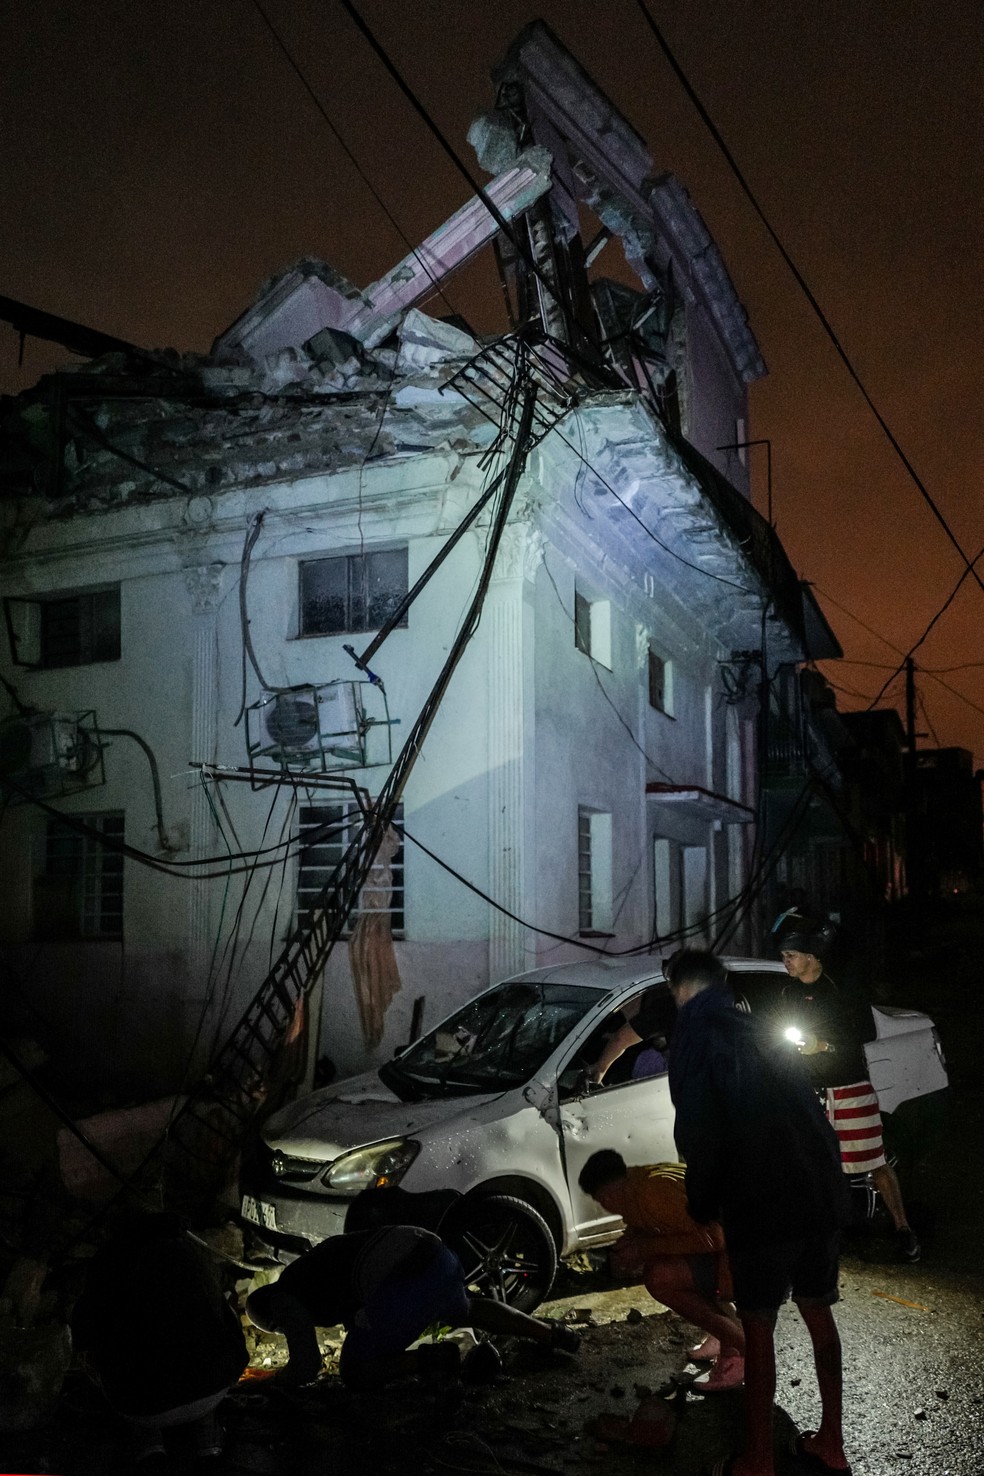 Cubamos tentam nesta segunda-feira (28) recuperar carro danificado após passagem de tornado em Havana — Foto: Adalberto Roque/ AFP